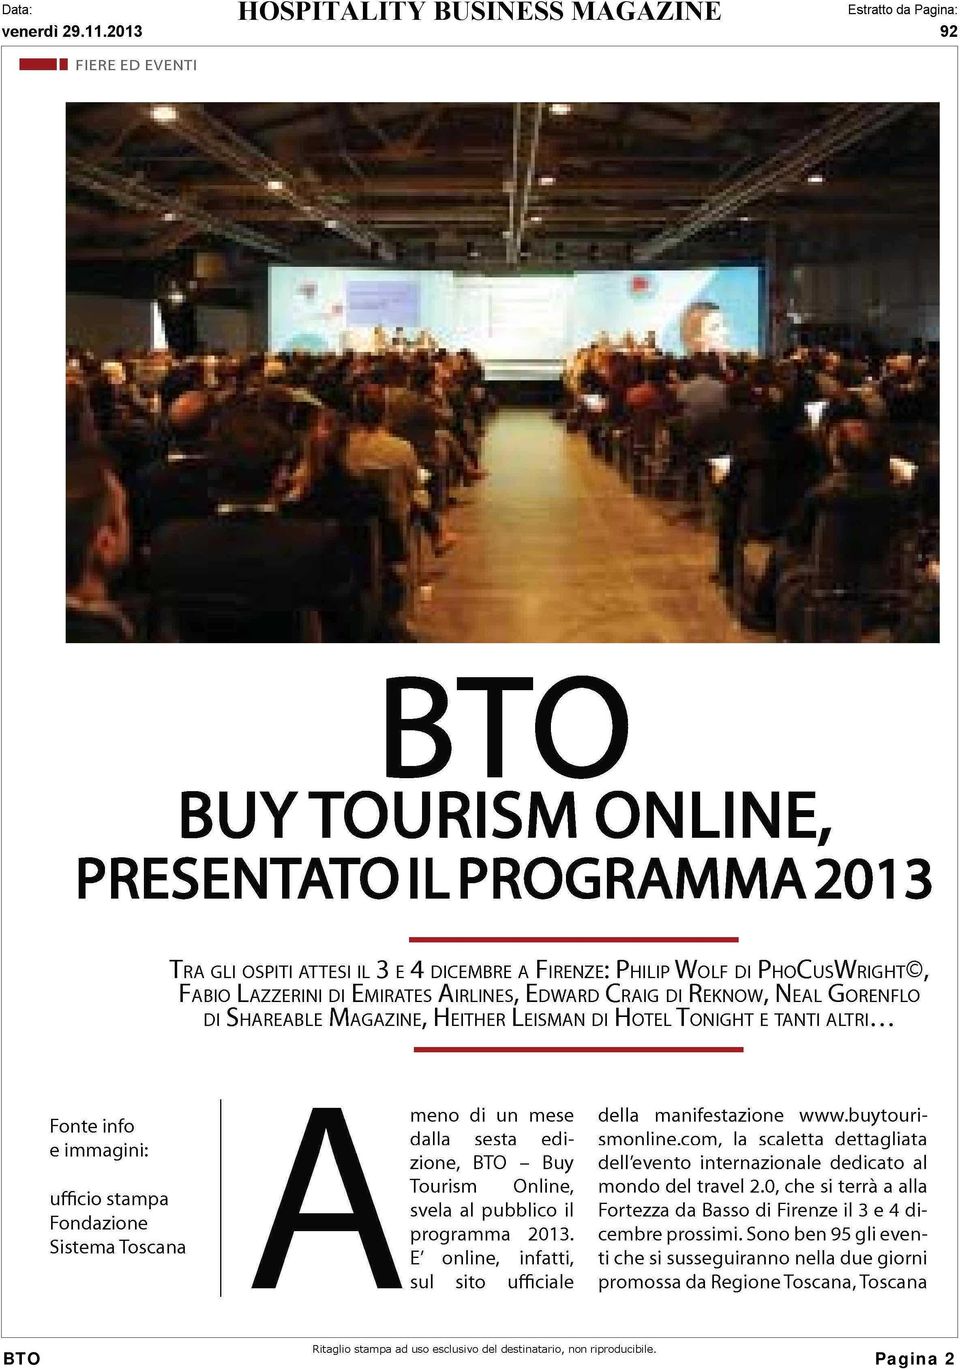 .. Fonte info e immagini: ufficio stampa Fondazione Sistema Toscana Ameno di un mese dalla sesta edizione, BTO - Buy Tourism Online, svela al pubblico il programma 2013.